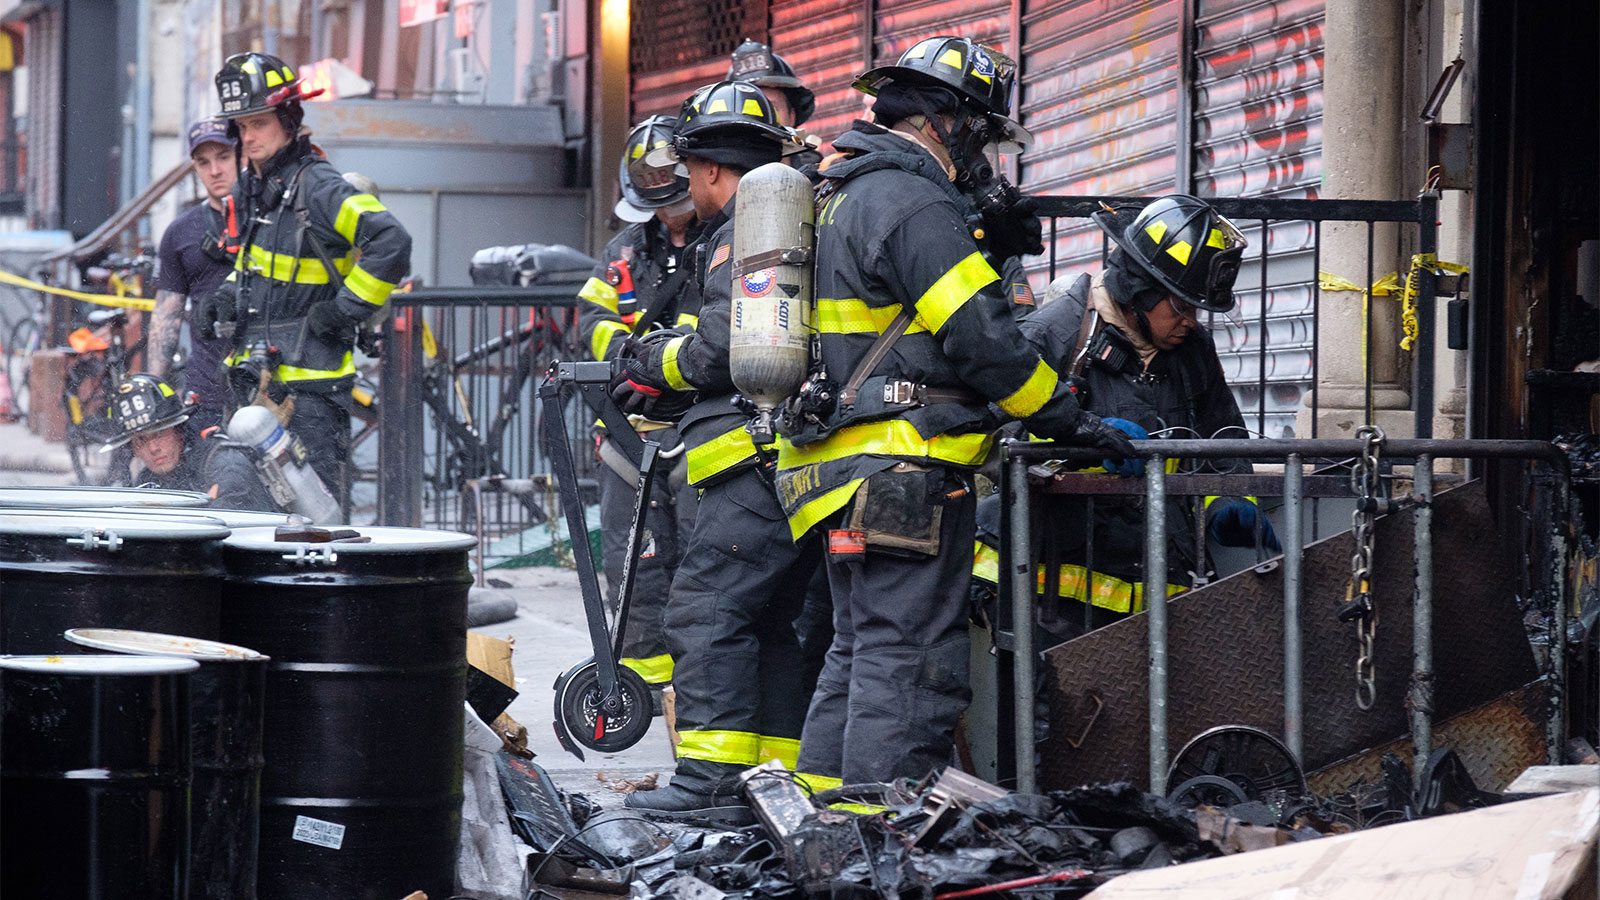 Vários bombeiros usando capacetes e equipamentos pretos à prova de fogo estão em uma calçada entre uma loja fechada, algum lixo e algumas lixeiras cilíndricas